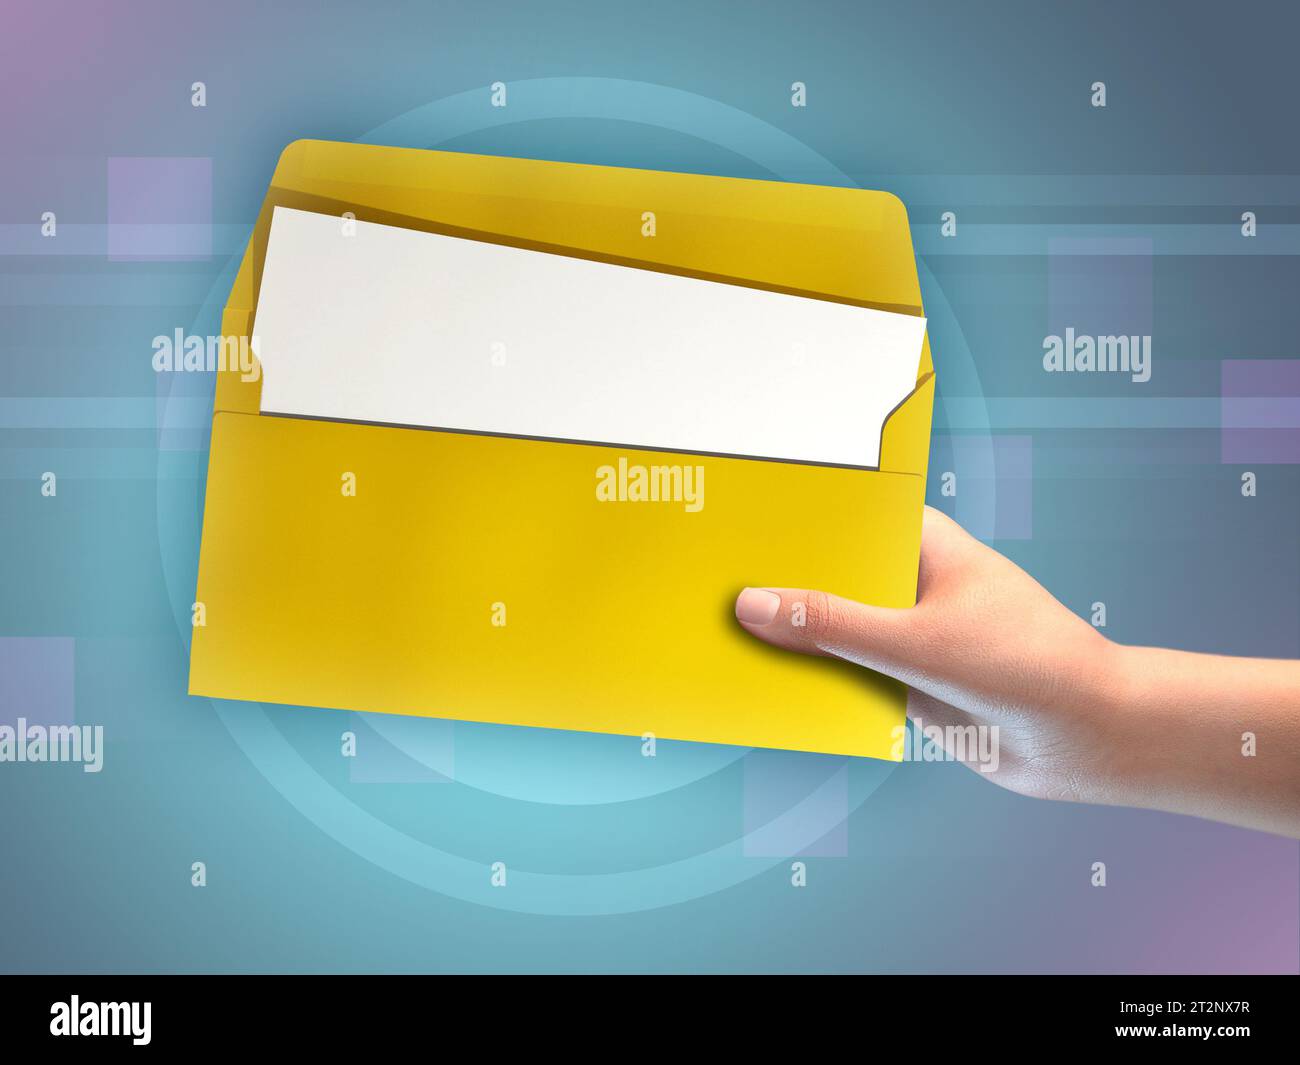 Aprire una busta gialla con un documento vuoto all'interno. Illustrazione digitale, rendering 3D. Foto Stock